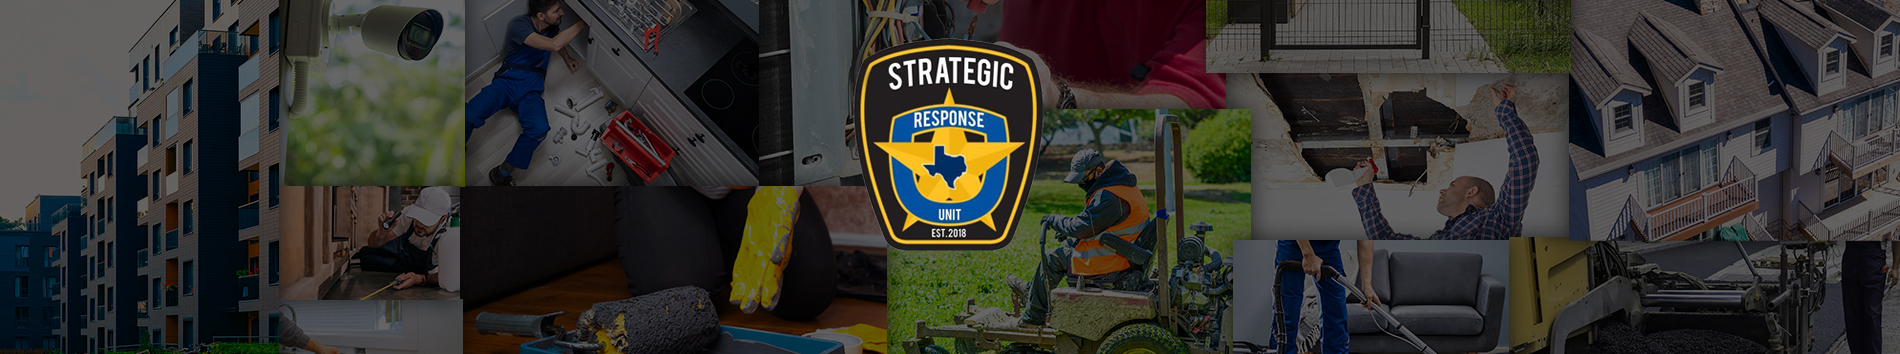 Strategic Response Unit